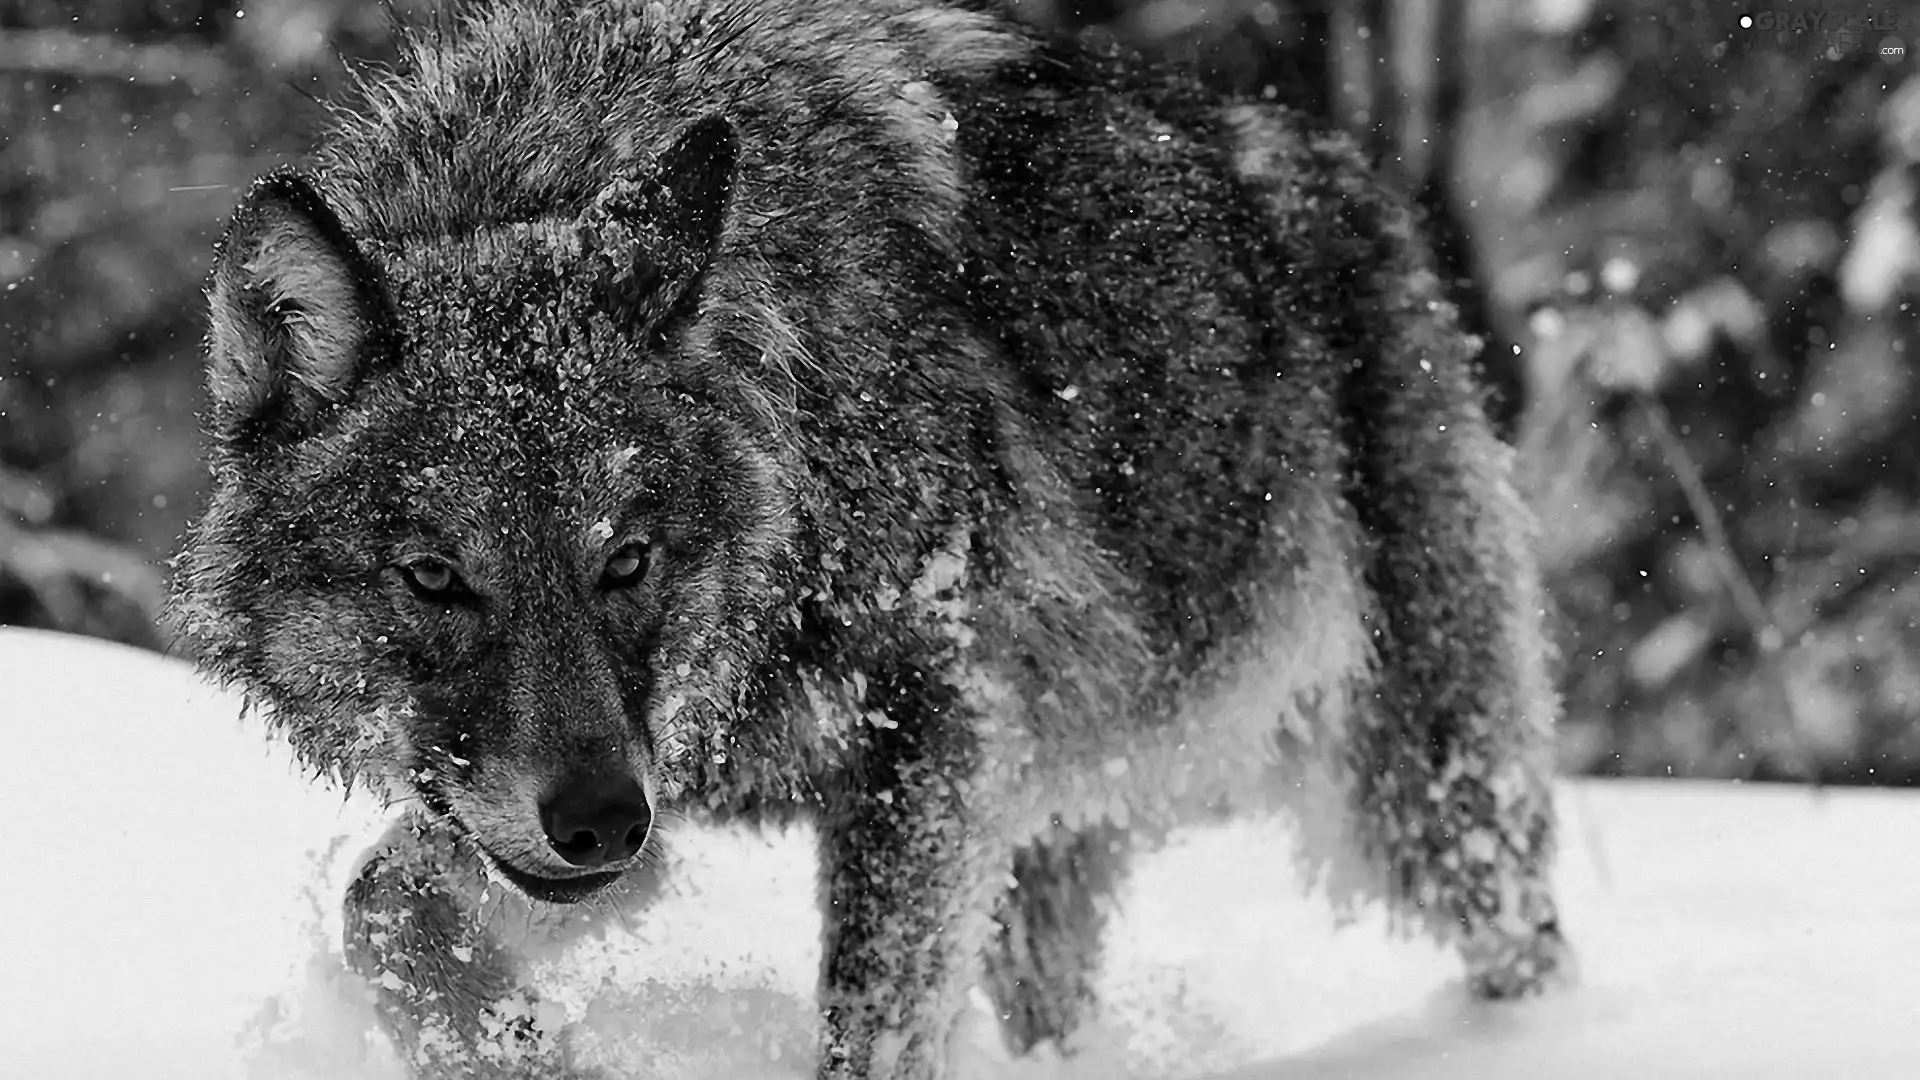 Wolf, snow